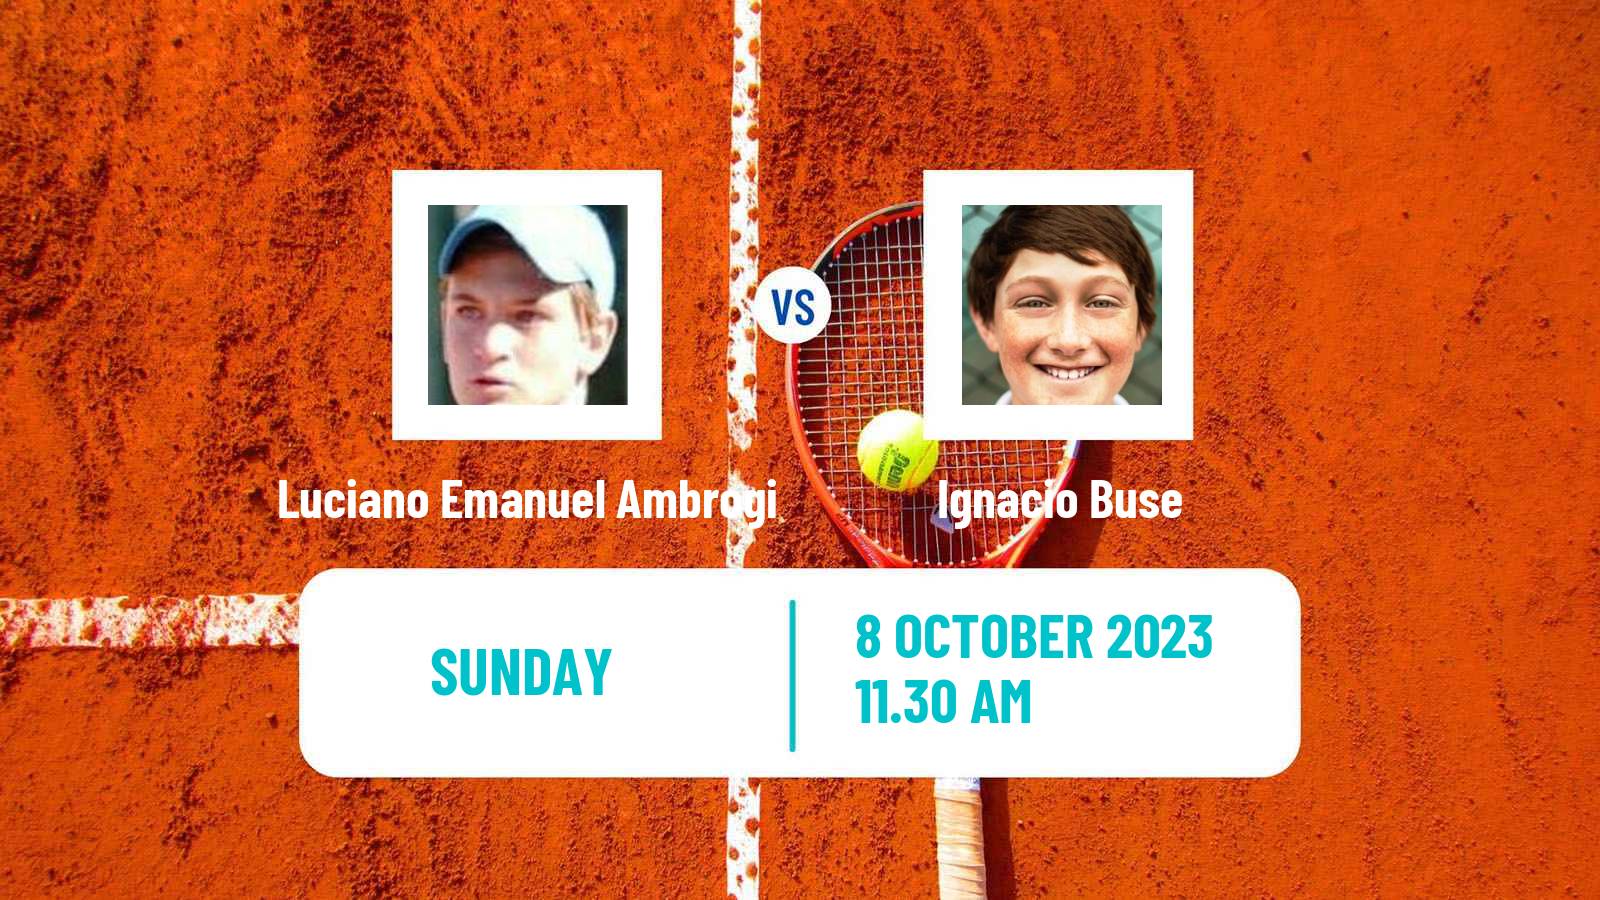 Tennis ITF M25 Mendoza Men Luciano Emanuel Ambrogi - Ignacio Buse